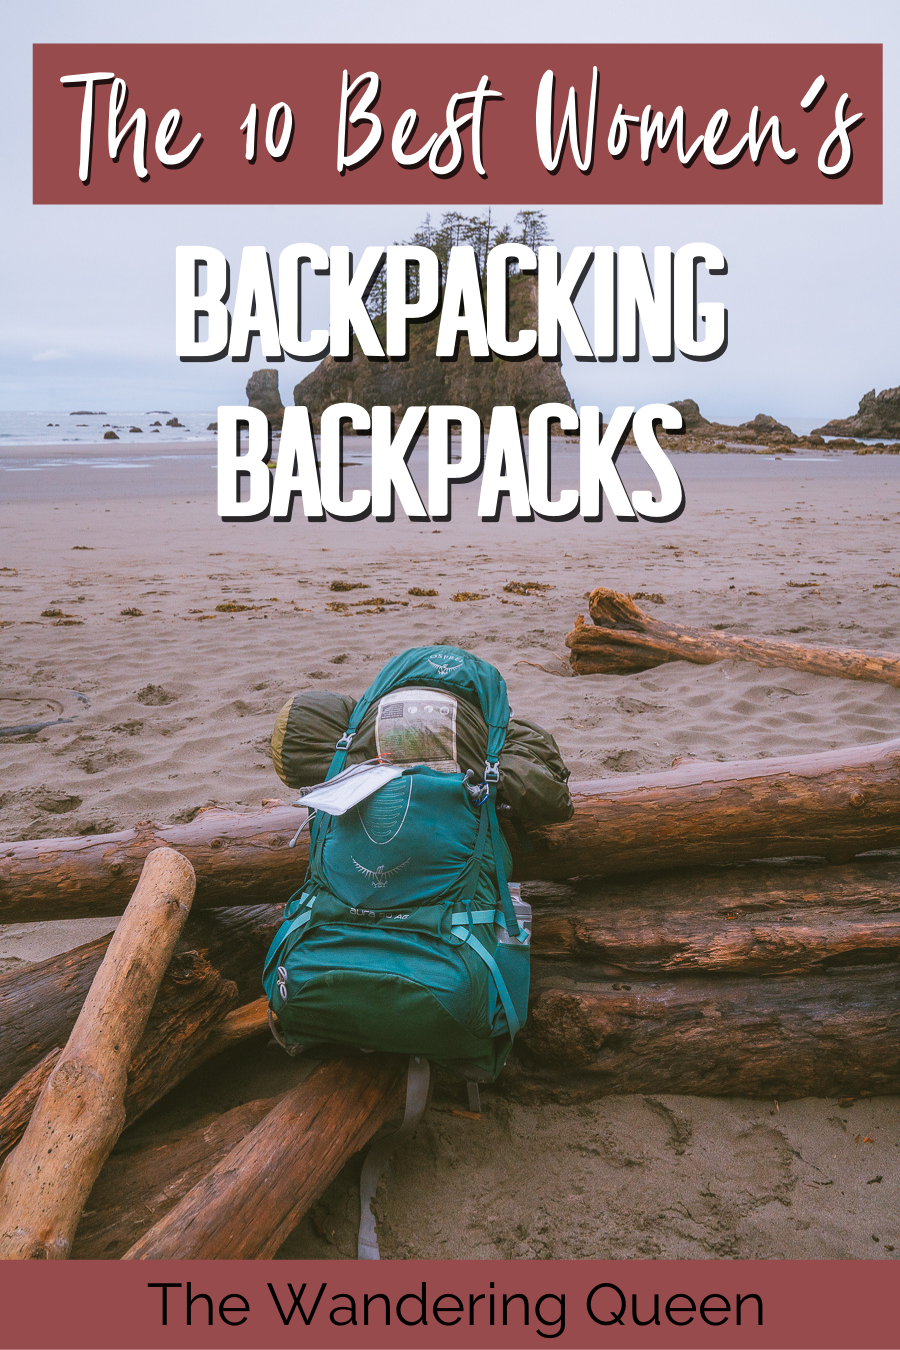 REI Co-op Women's Hiking Backpacks